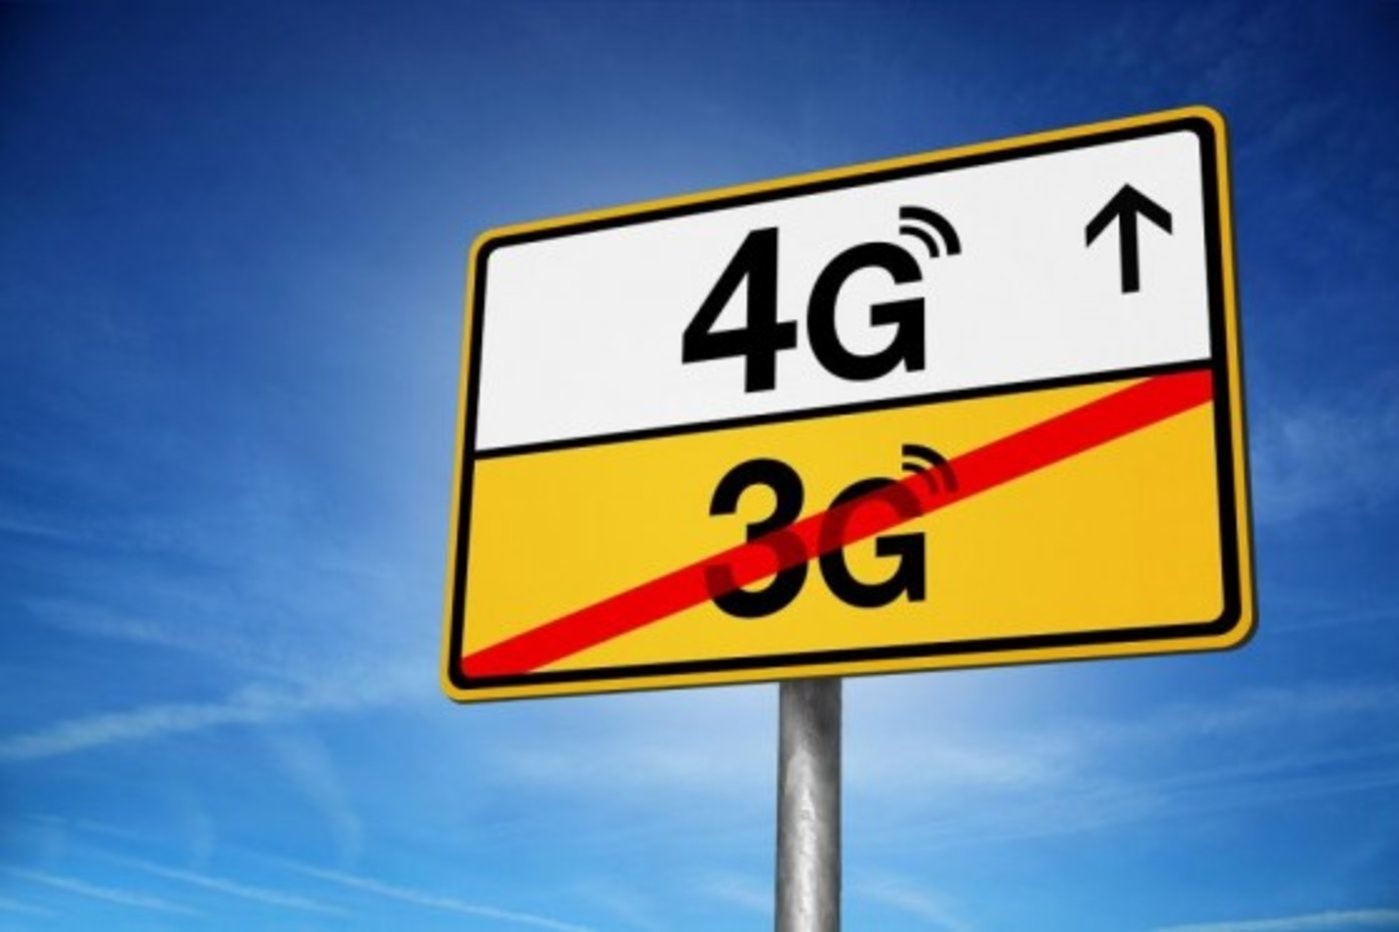 3G 手机无法接入 5G 网络，背后原因及事件引人深思  第8张